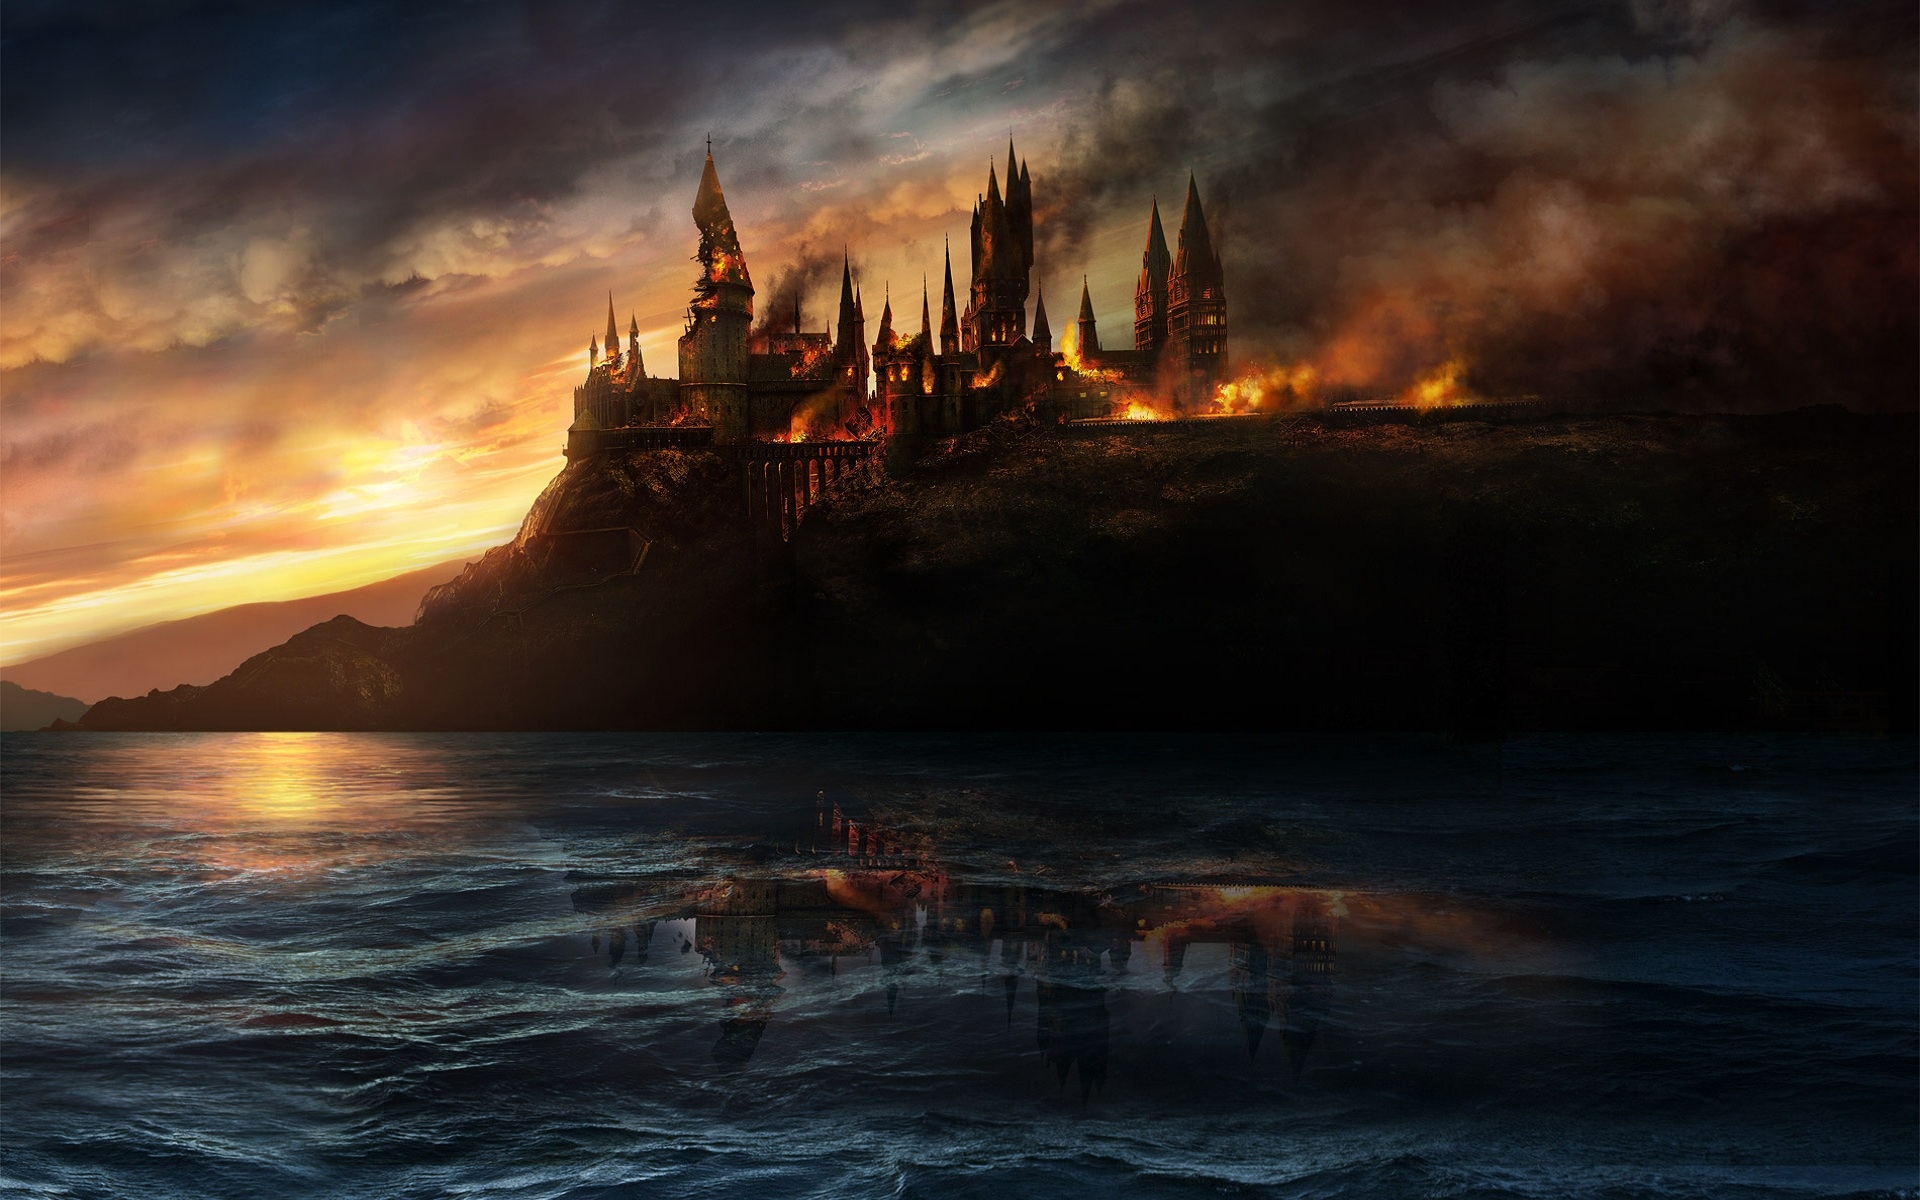 Fondos de Harry Potter y las reliquias de la muerte, Wallpapers Gratis